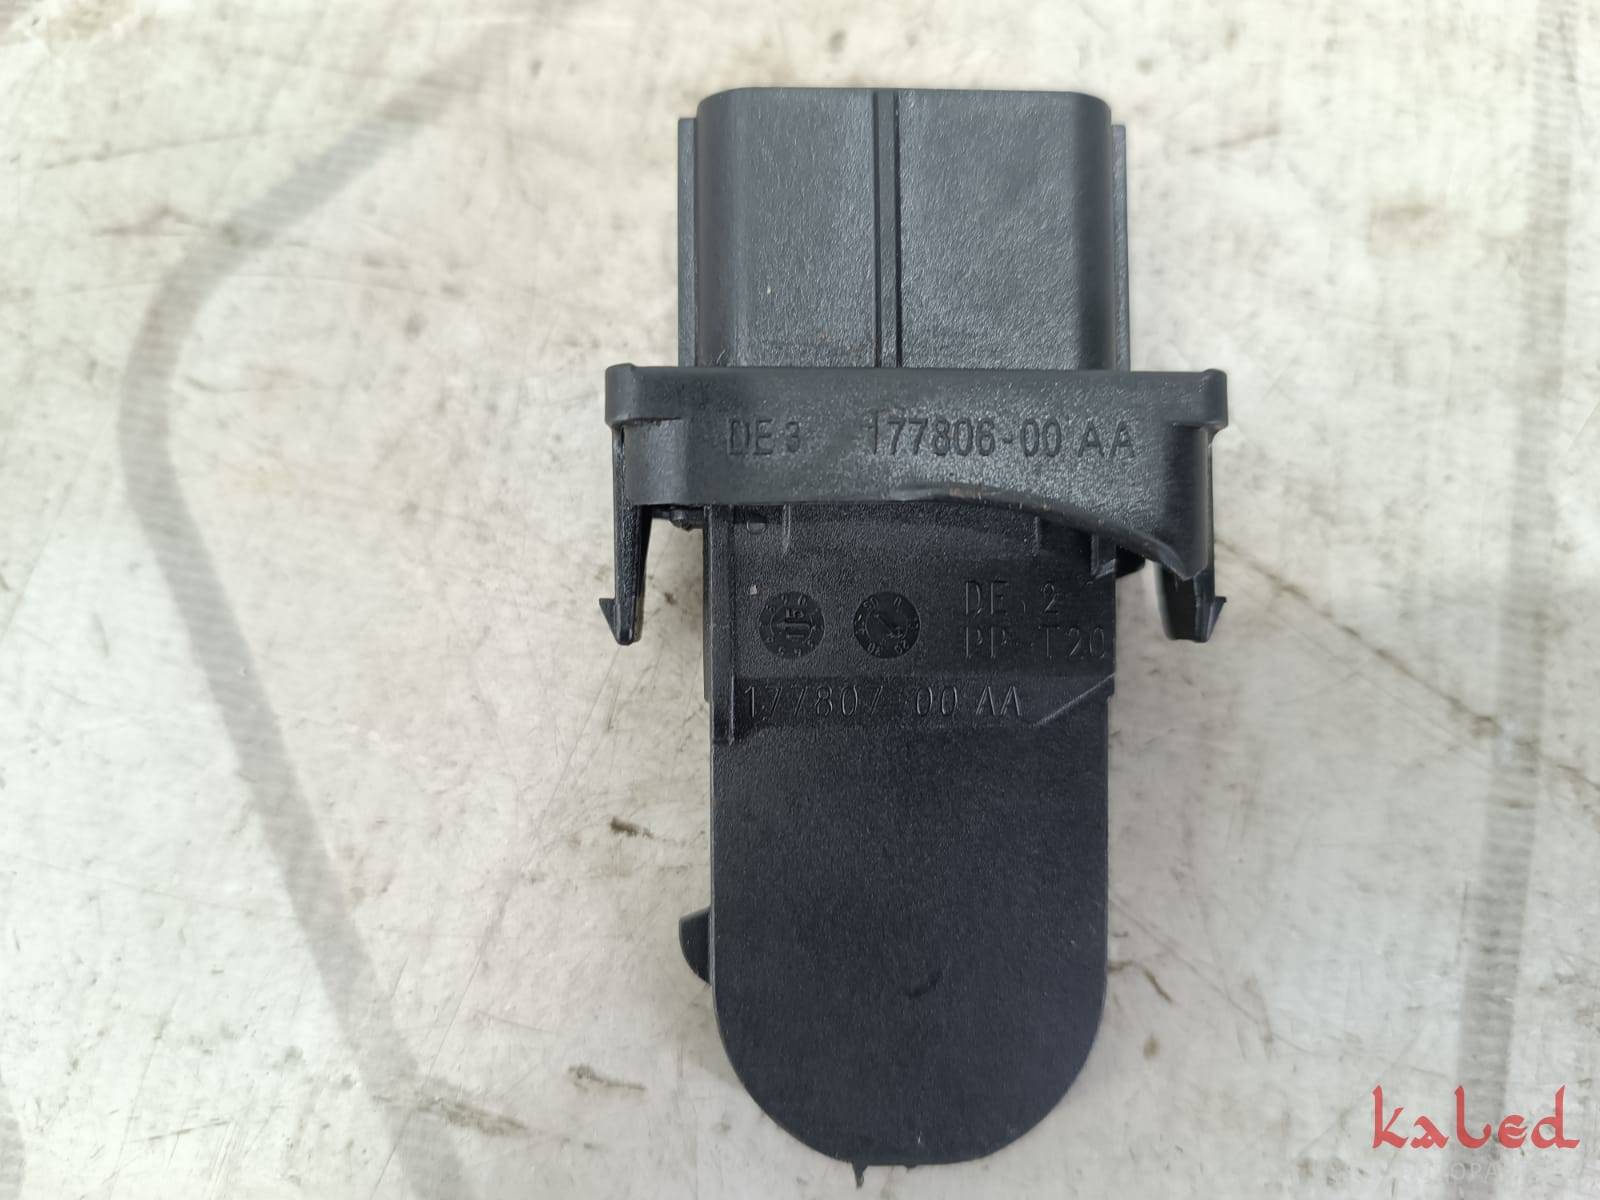 Sensor Pedal de Acelerador VW código:177806-00AA